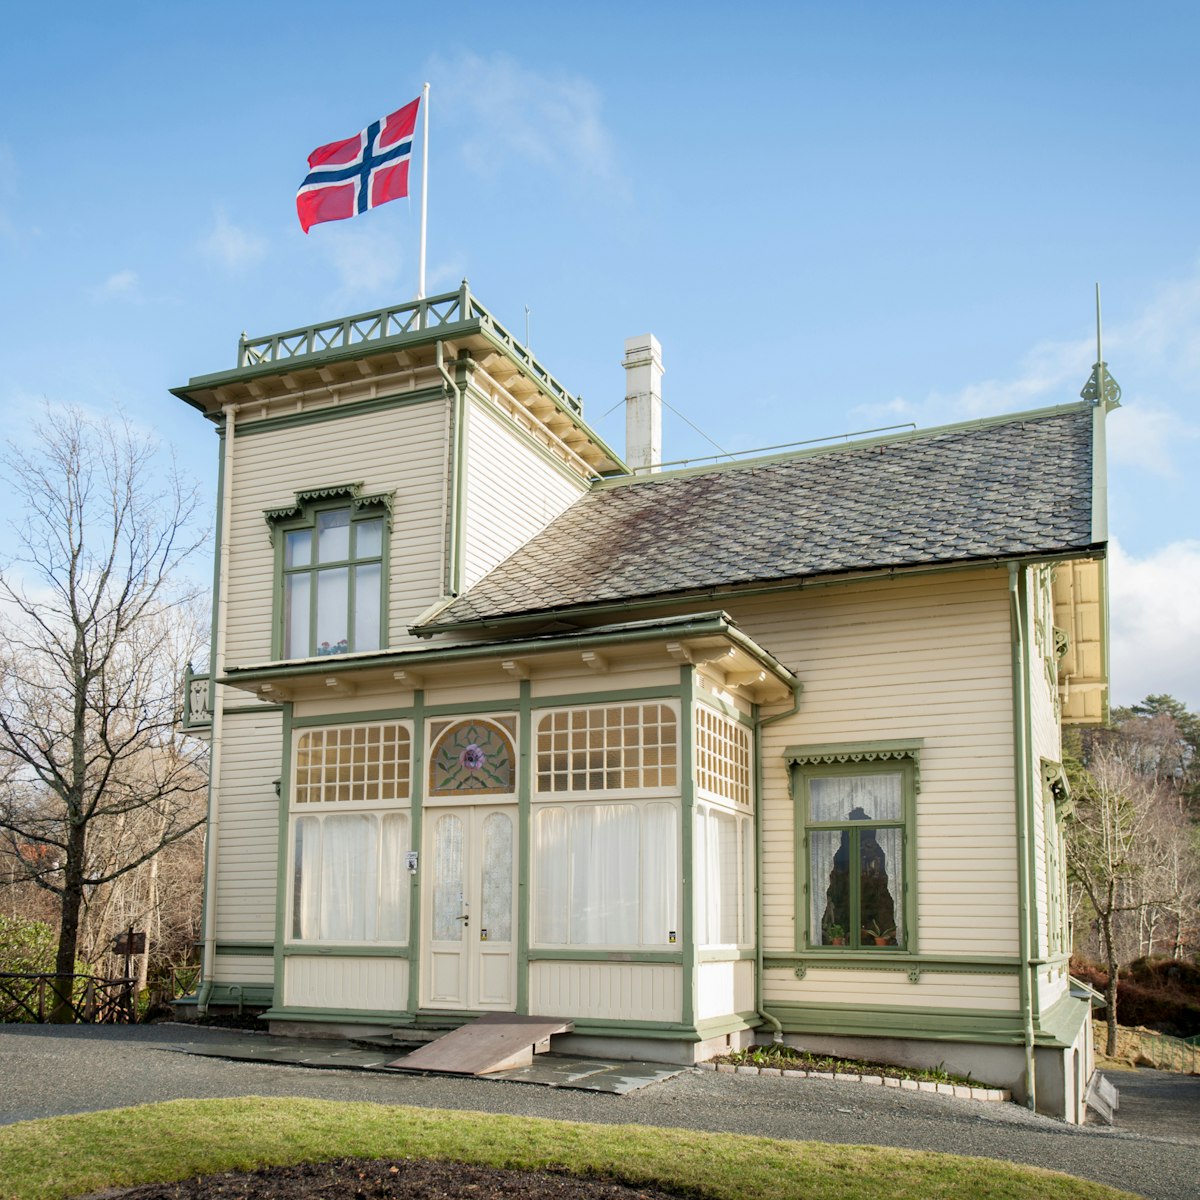 Edvard Grieg's Home, Troldhaugen